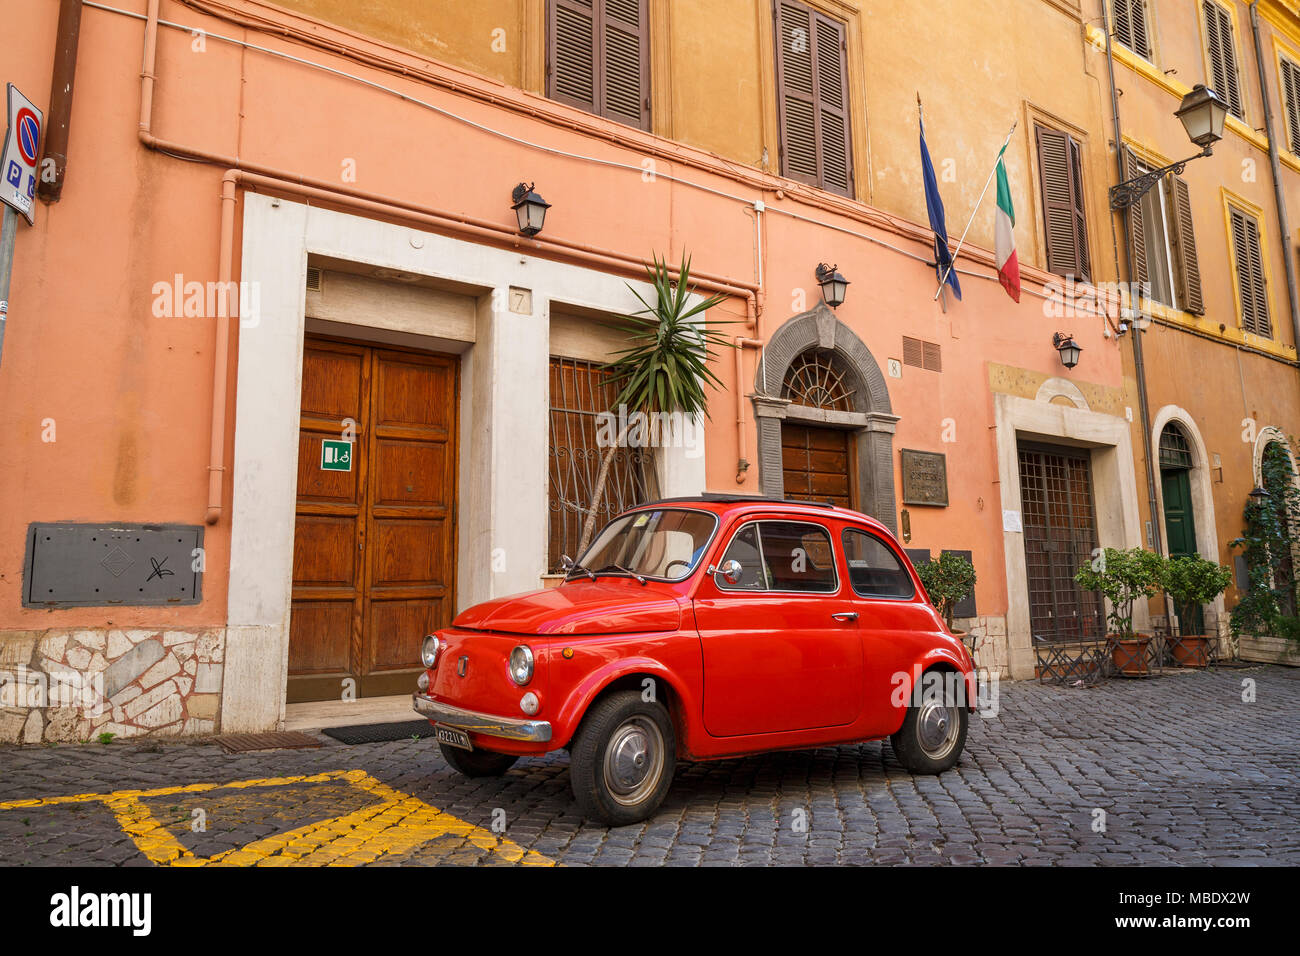 Vista iconico di un vecchio rosso Fiat 500 parcheggiato in una strada a ciottoli in Roma, Italia, al di fuori di un edificio sotto la bandiera italiana. Le targhe mostrano un MI Foto Stock